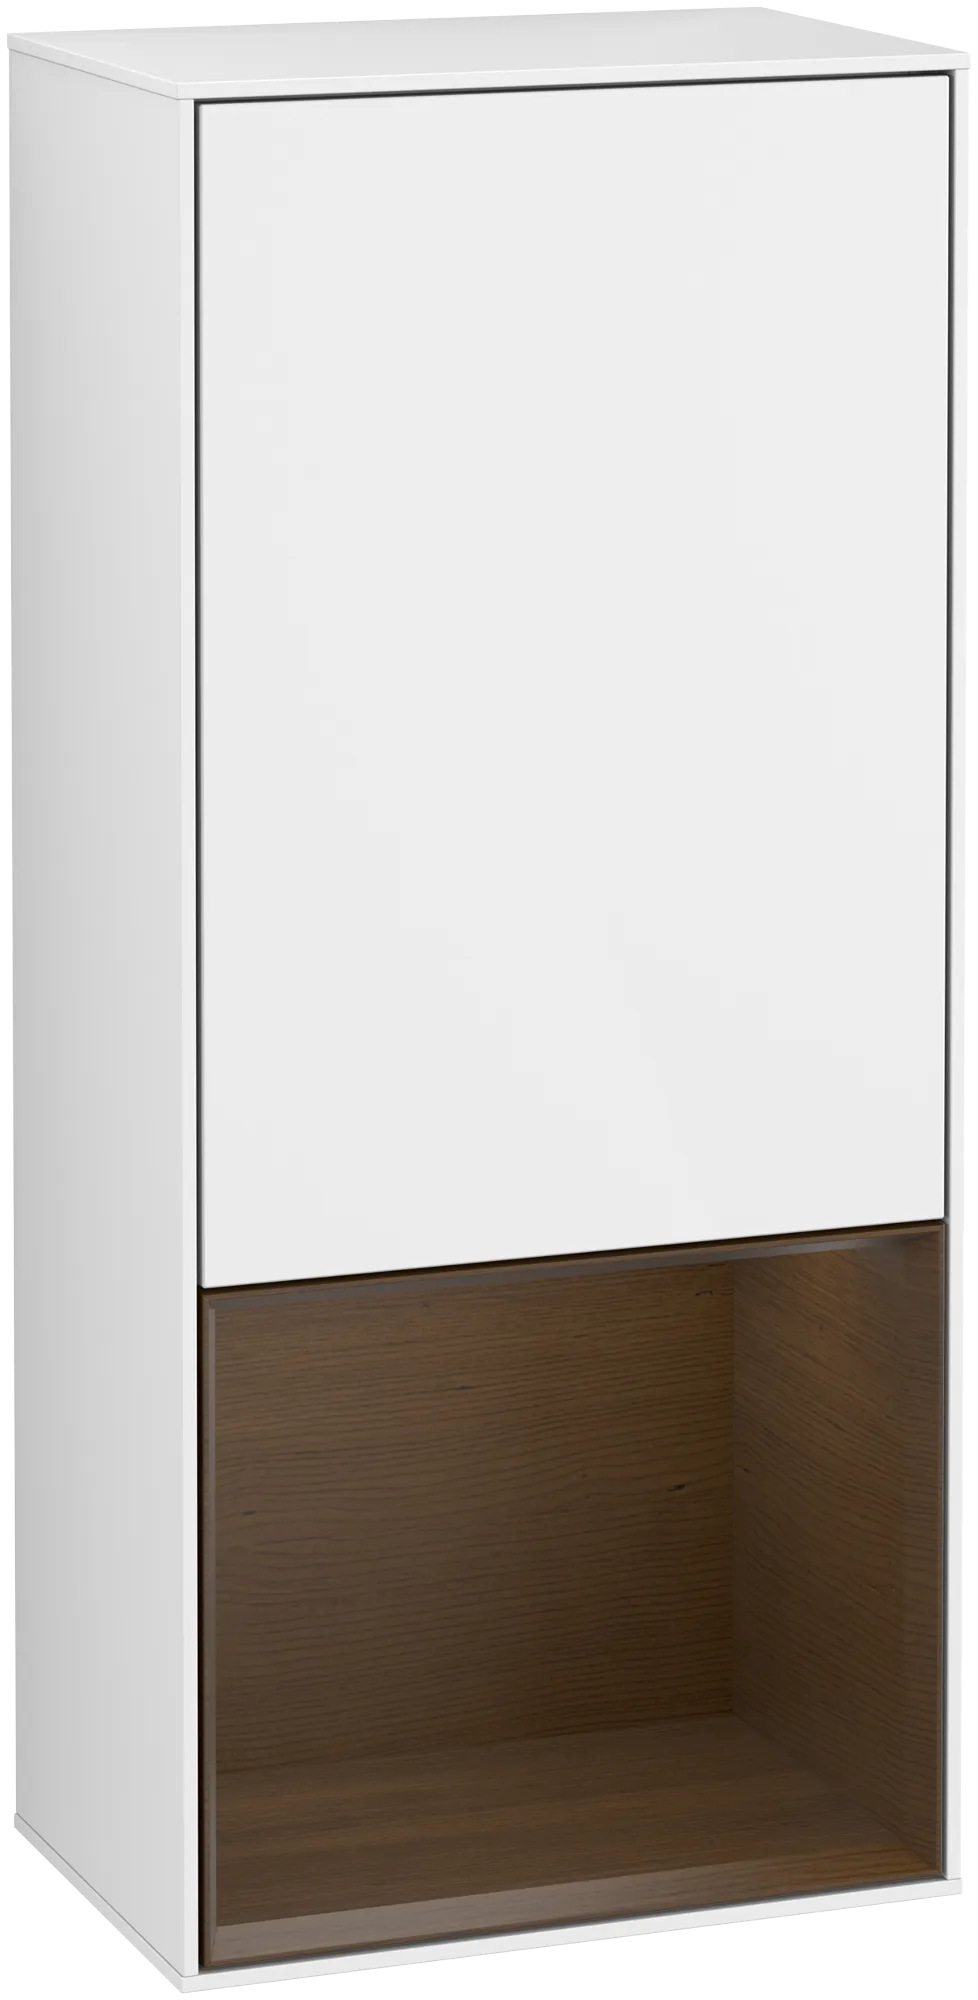 Bild von VILLEROY BOCH Finion Seitenschrank, mit Beleuchtung, 1 Tür, 418 x 936 x 270 mm, Glossy White Lacquer / Walnut Veneer #G550GNGF